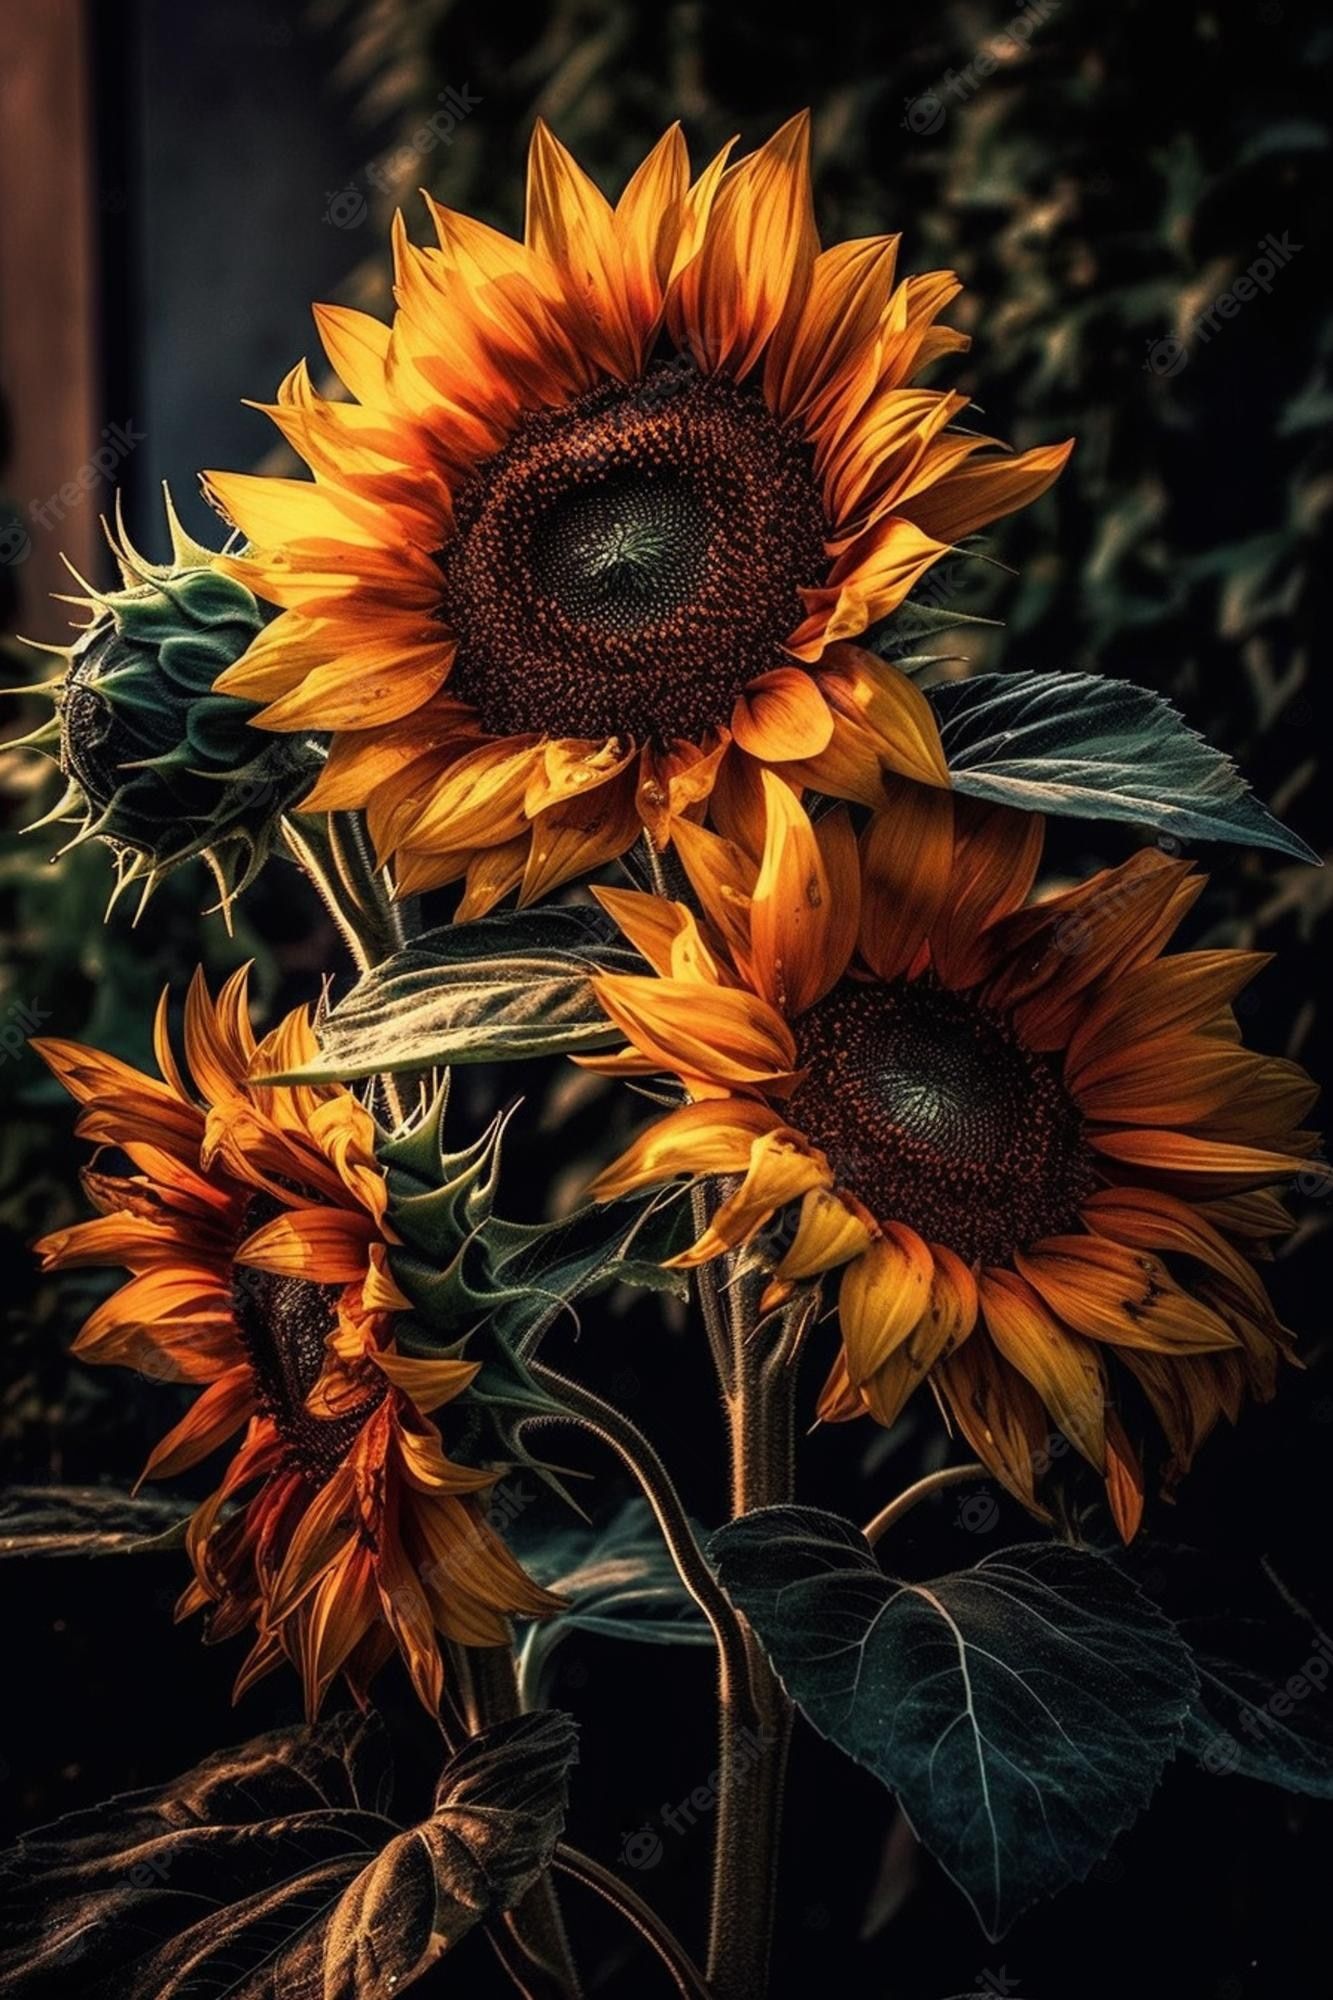  Schönsten Hintergrundbild 1333x2000. Sonnenblumen sind die schönsten blumen der welt